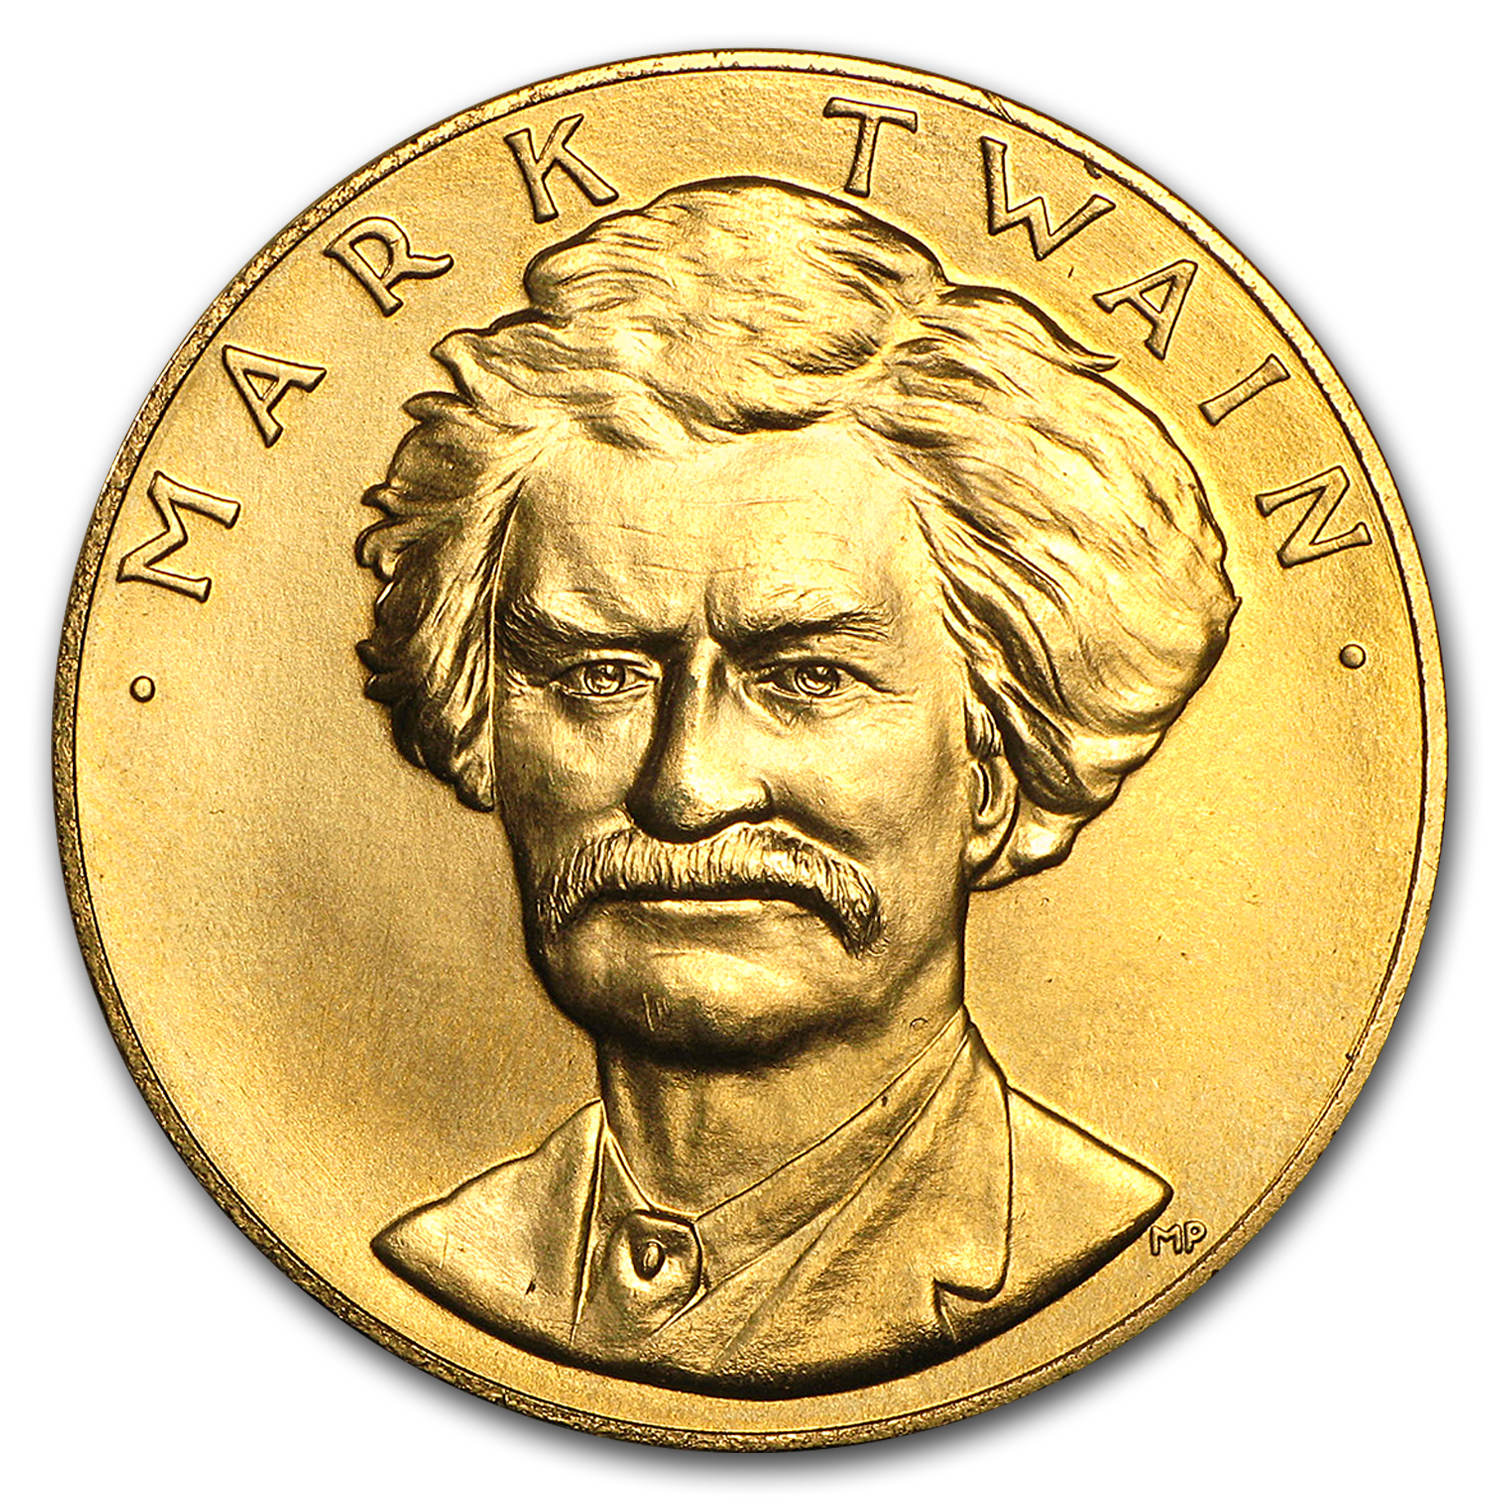 Buy U.S. Mint 1 oz Gold Commemorative Arts Medal Mark Twain - Click Image to Close